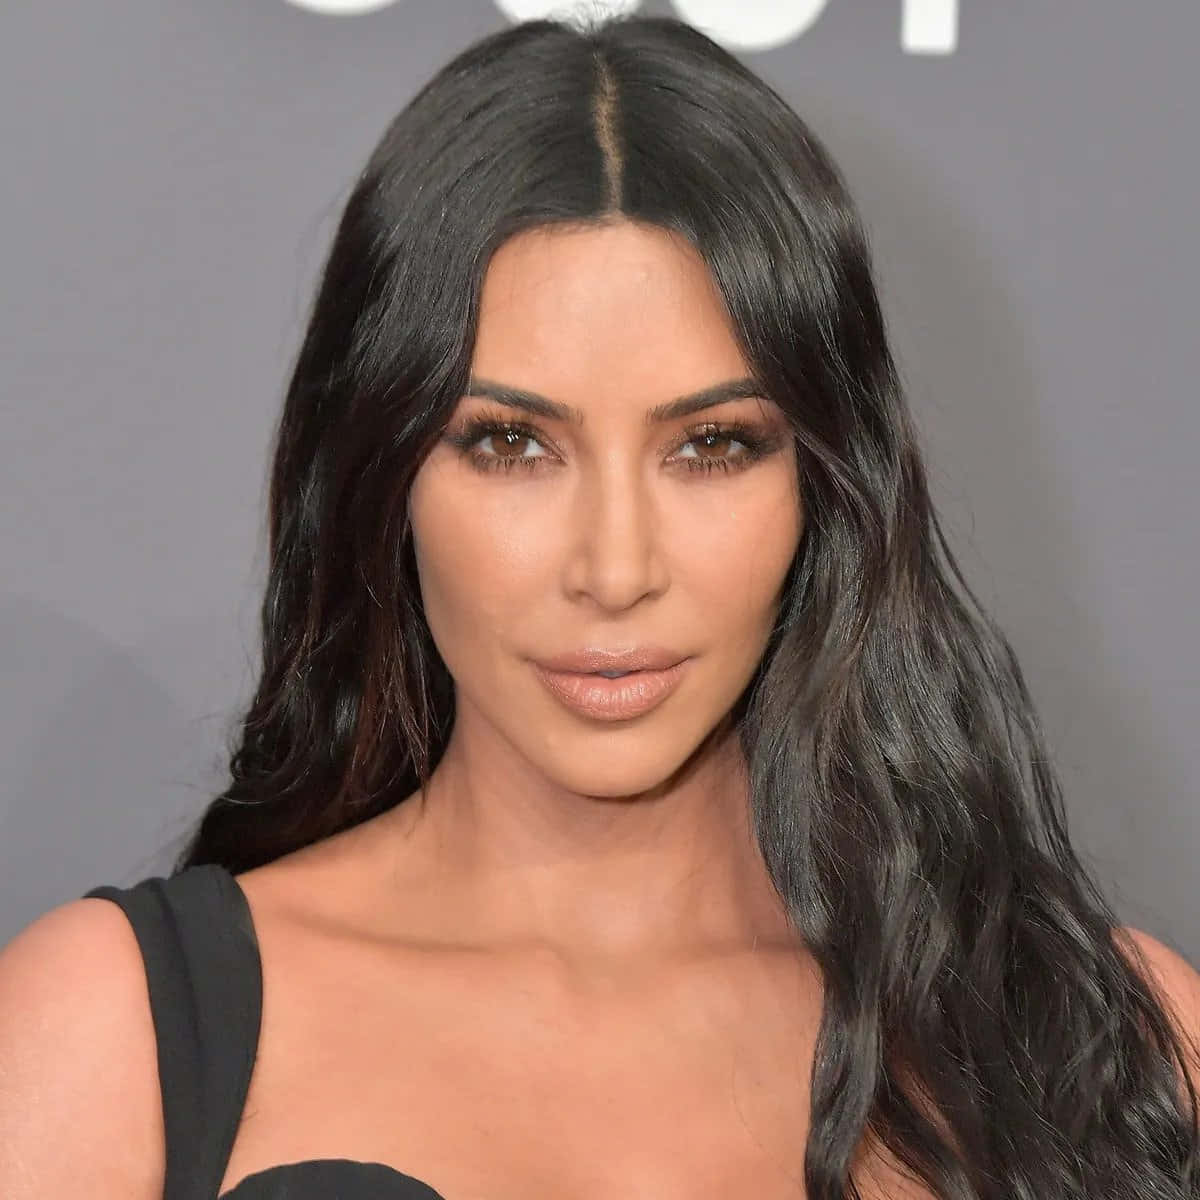 Kimkardashian Präsentiert Ihre Charakteristischen Kurven In Eleganter, Durchsichtiger Unterwäsche.